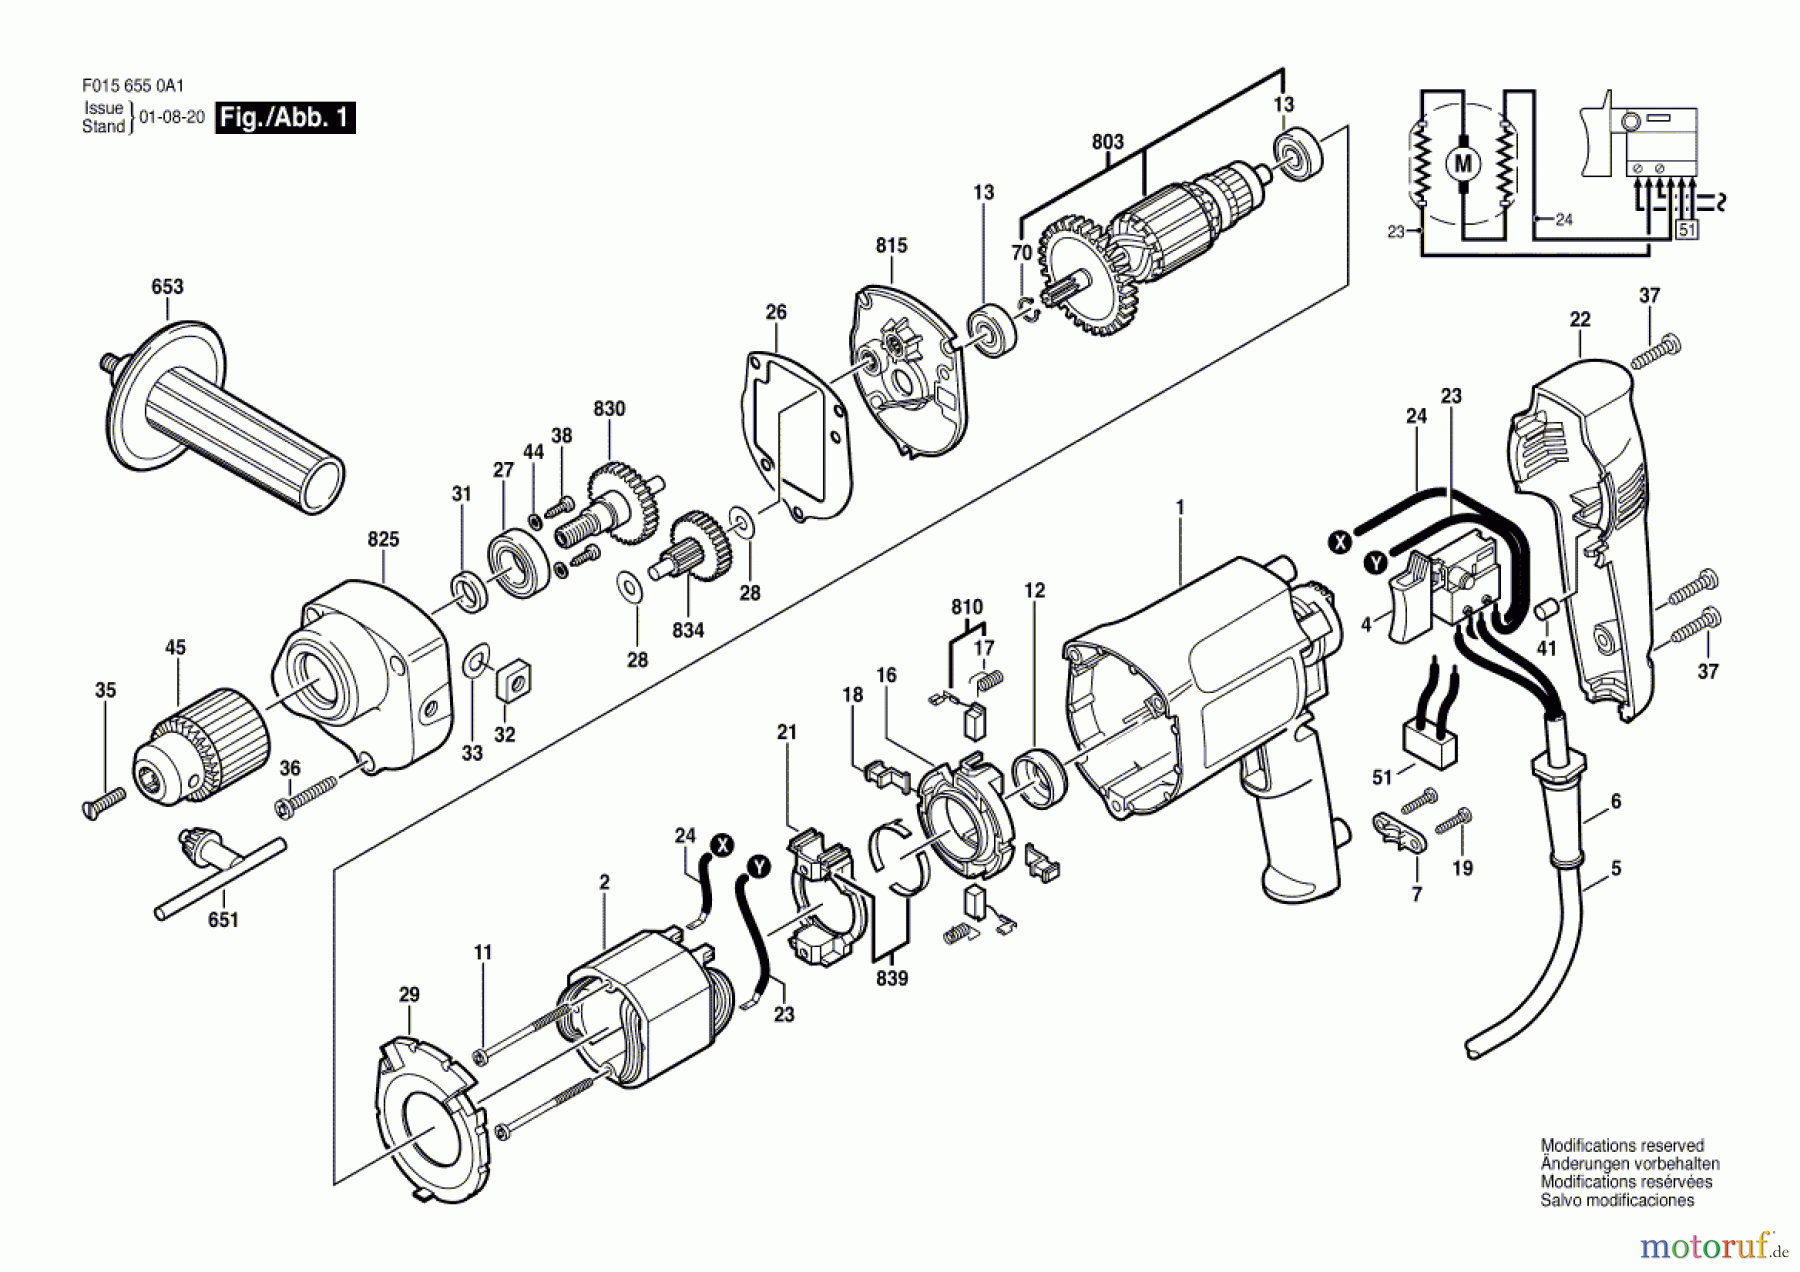  Bosch Werkzeug Bohrmaschine 6550 U1 Seite 1